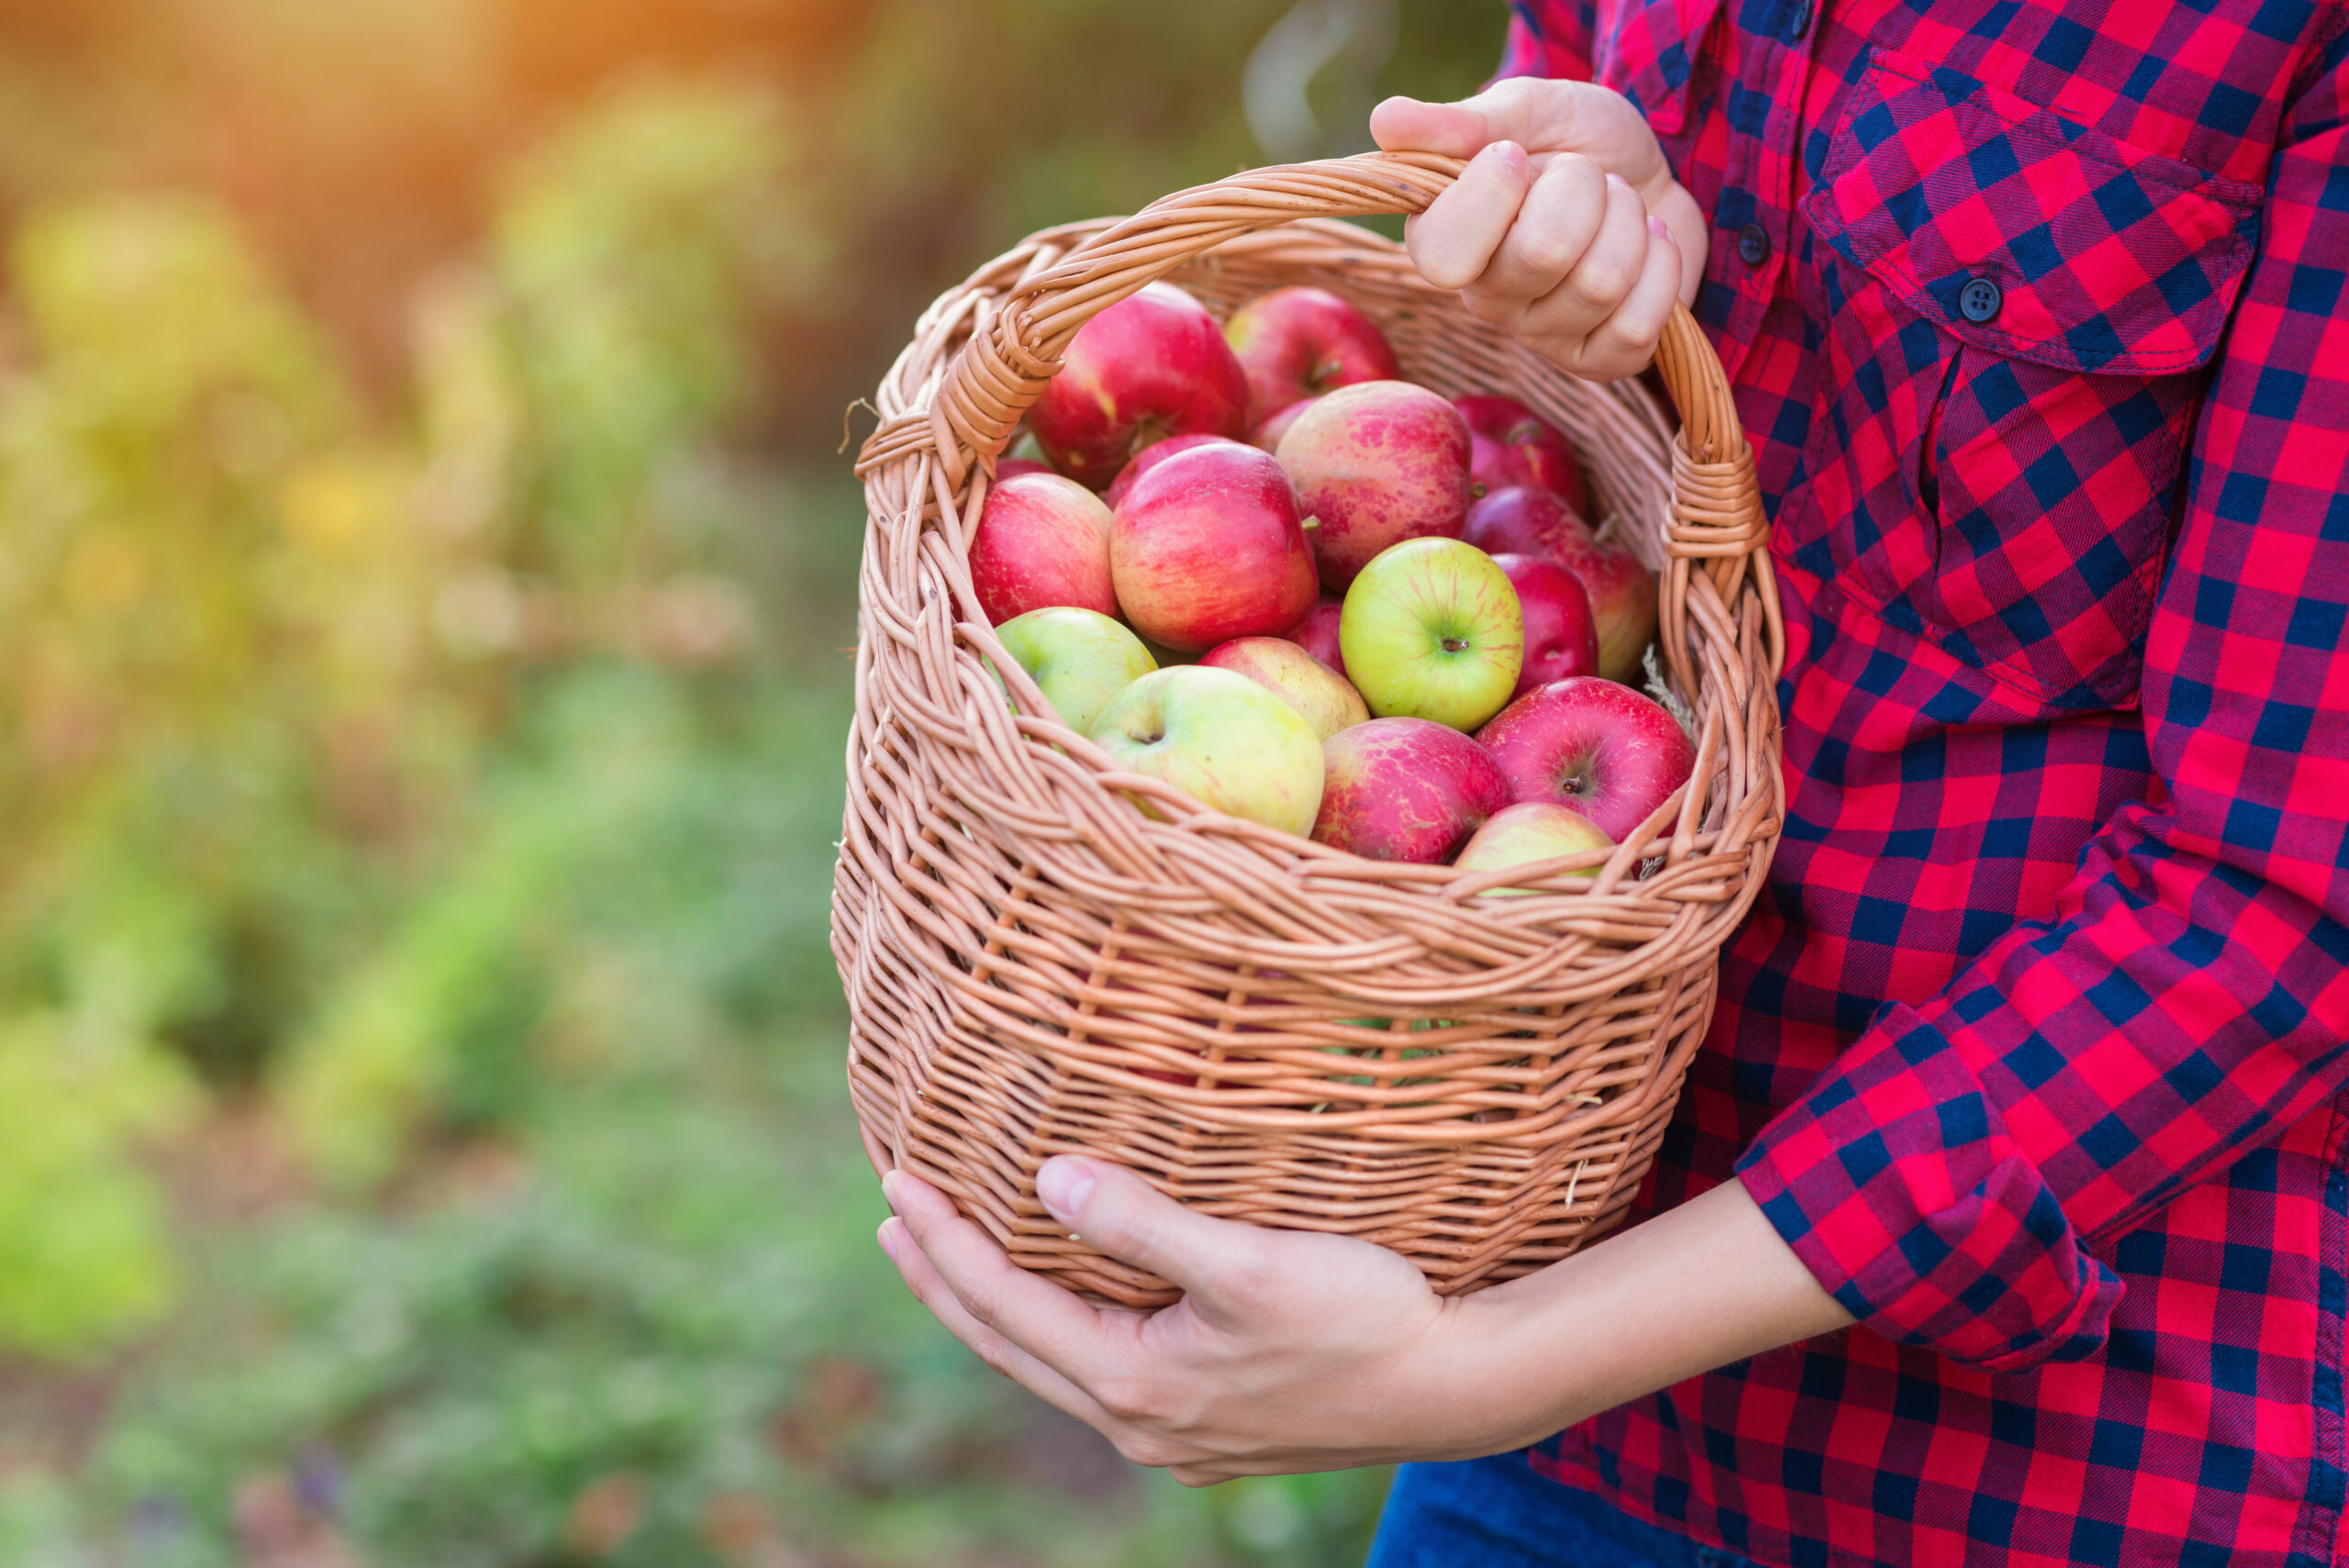 To piękne zdjęcie przedstawia dłonie kobiety trzymającej kosz z jabłkami papierówkami, które dopiero co zostały zebrane z sadu. Ich intensywny kolor i soczysty wygląd zachęcają do spróbowania i cieszenia się smakiem tych owoców.